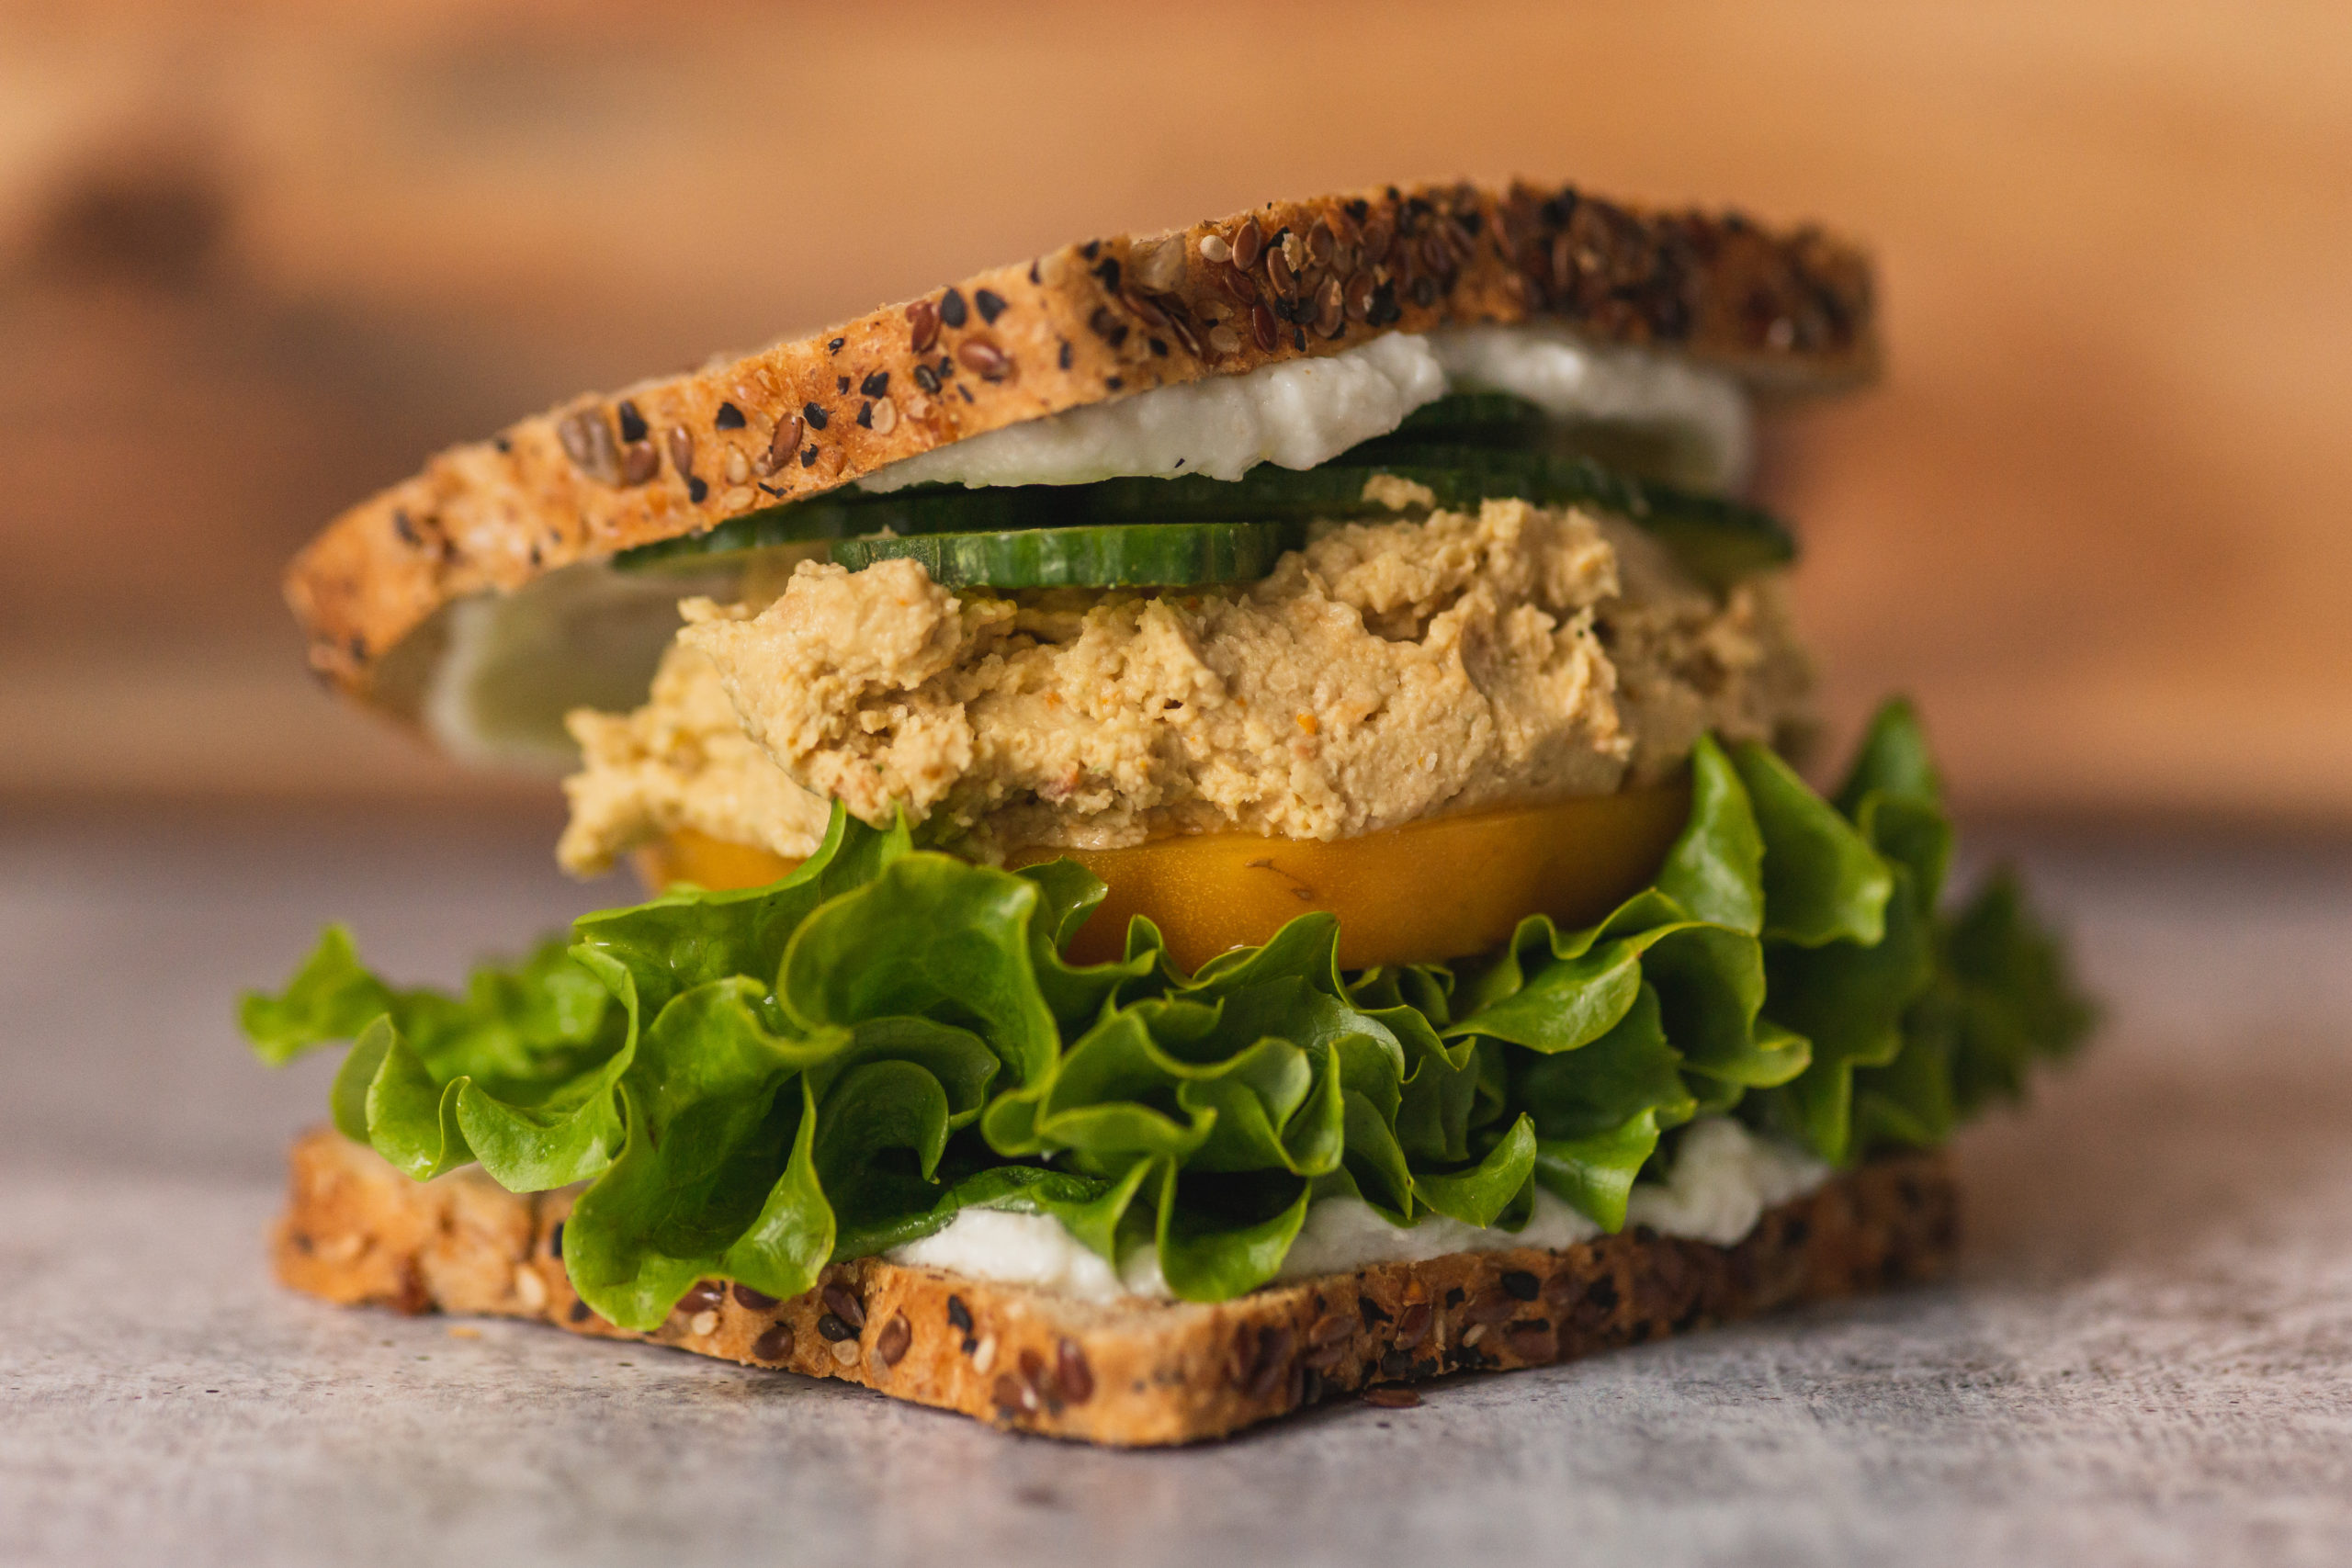 Vegan hummus & toum garlic sauce in healthy sandwich.